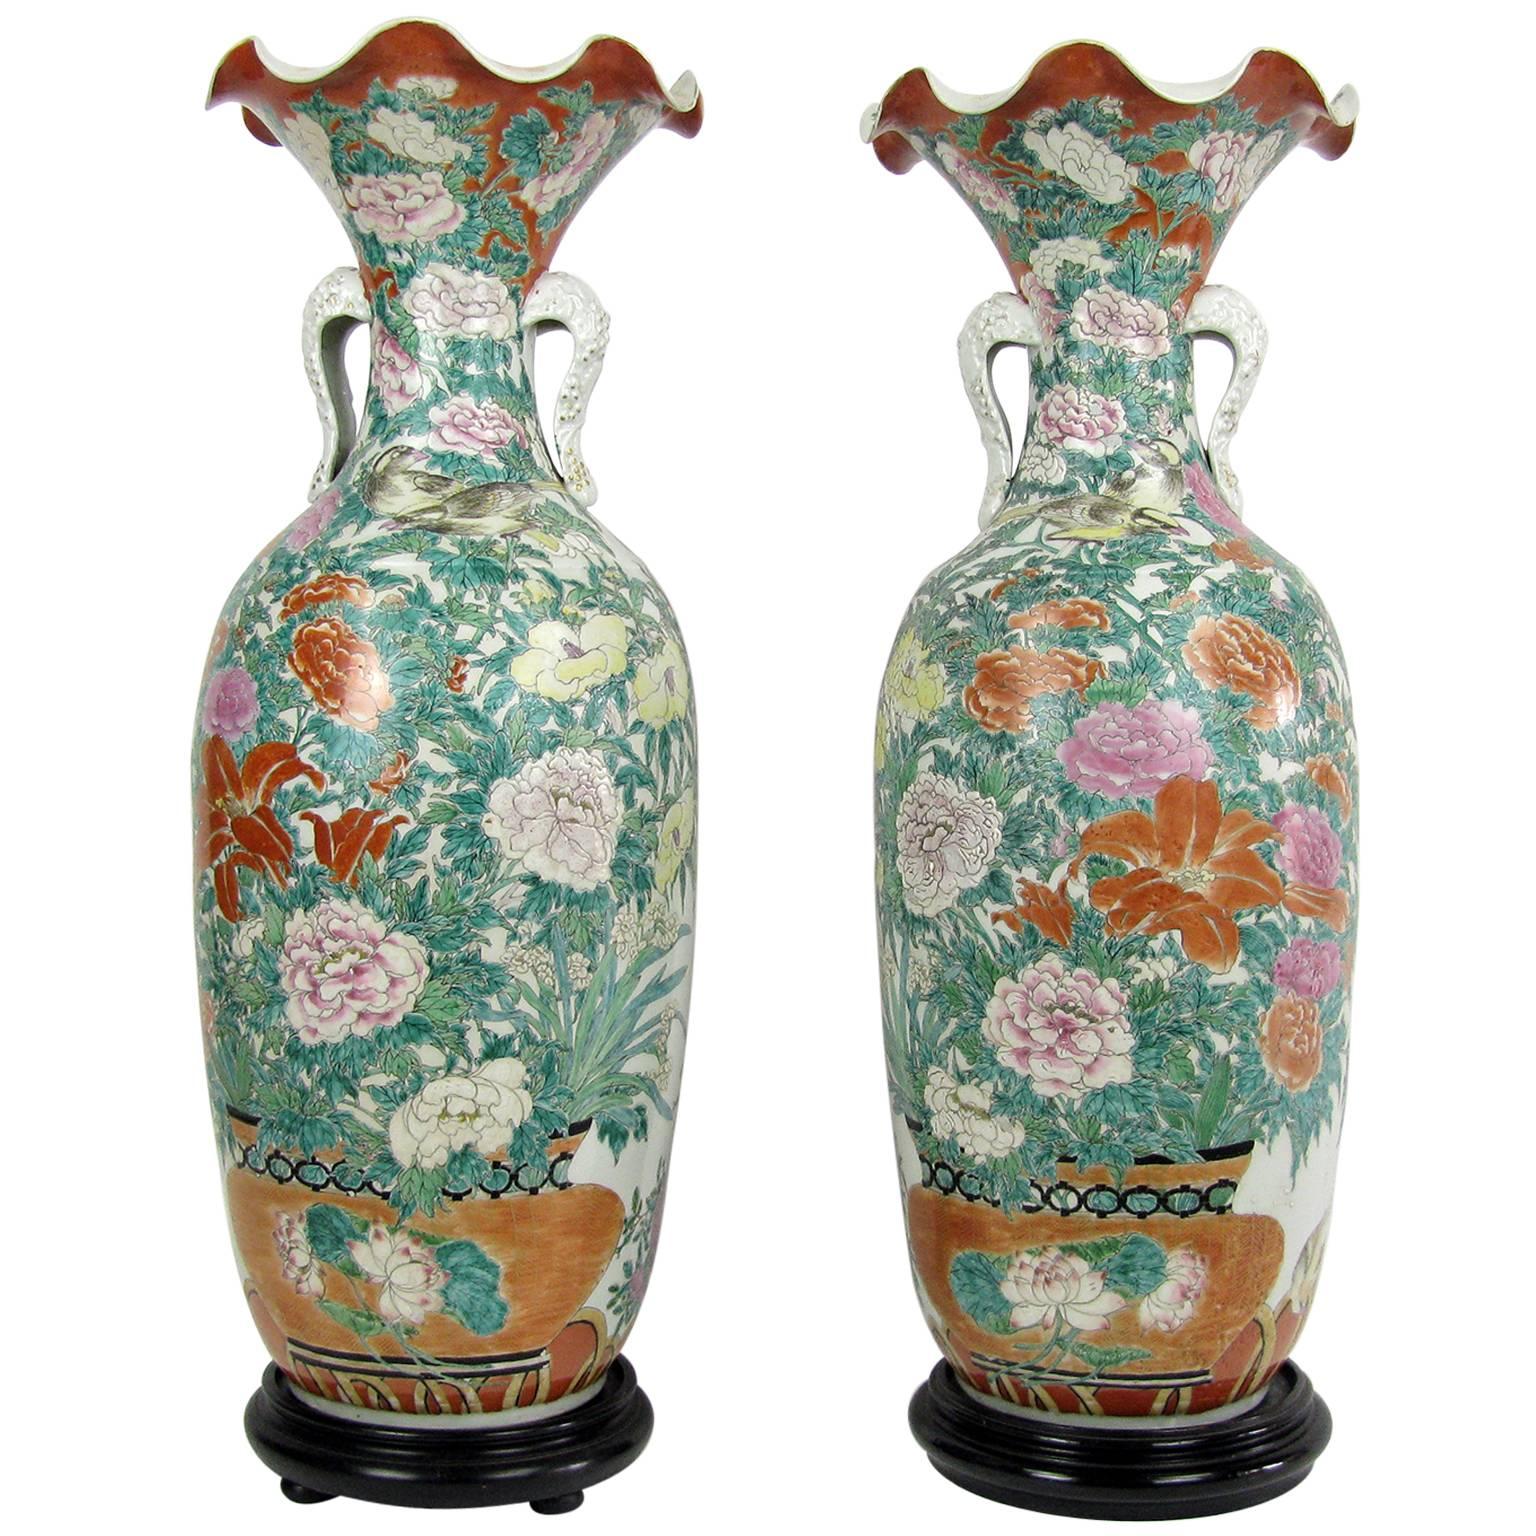 Pair of Large Japanese Porcelain Vases 19th Century Kutani Style